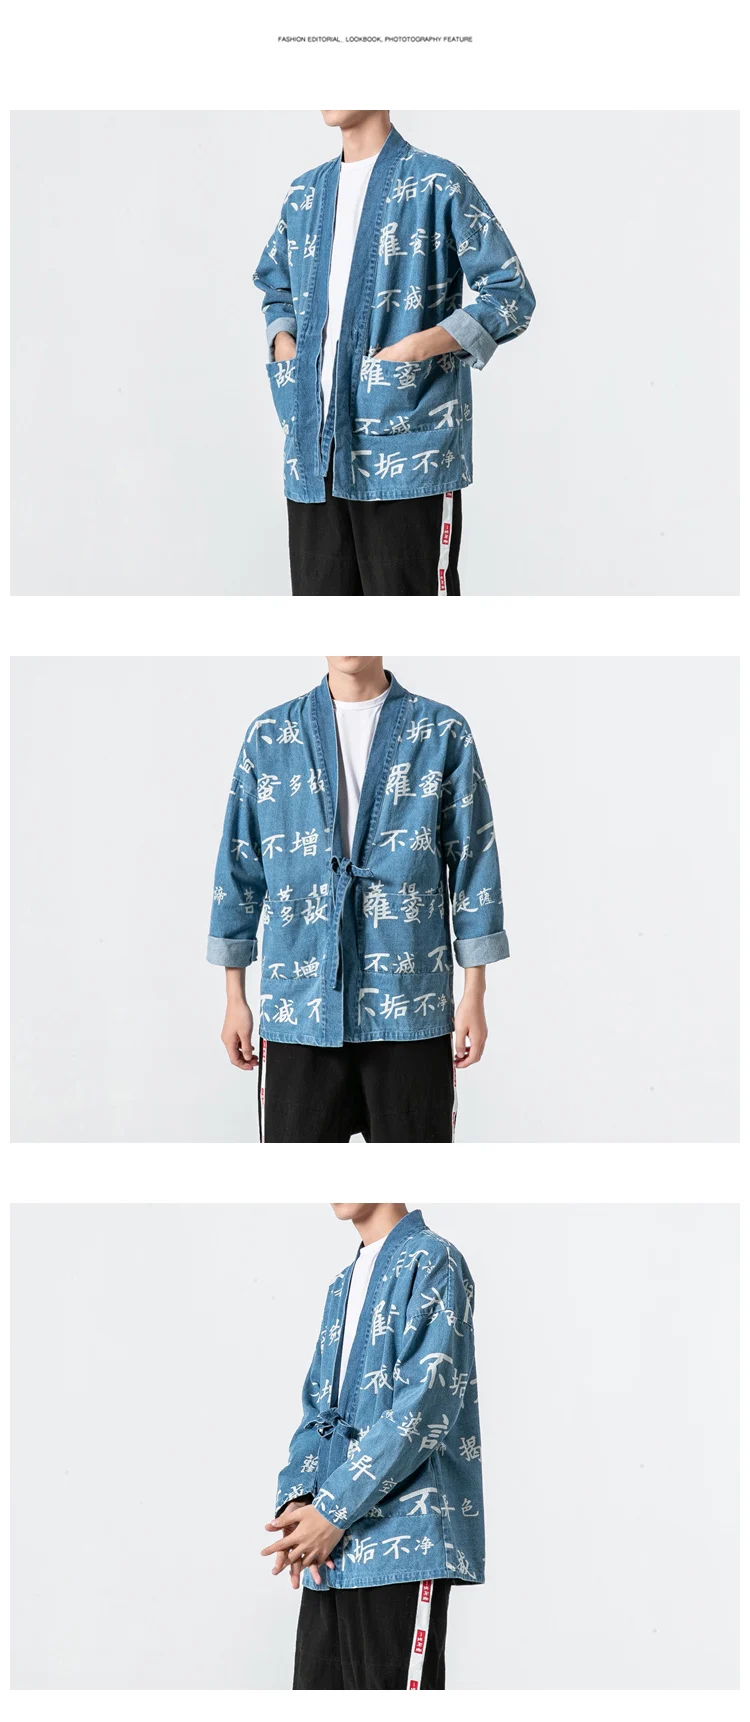 Sinicism магазин мужчин харауку кимоно кардиган мужчин s японский ремень для верхней одежды рубашки мужские хип-хоп модные корейские рубашки 5XL